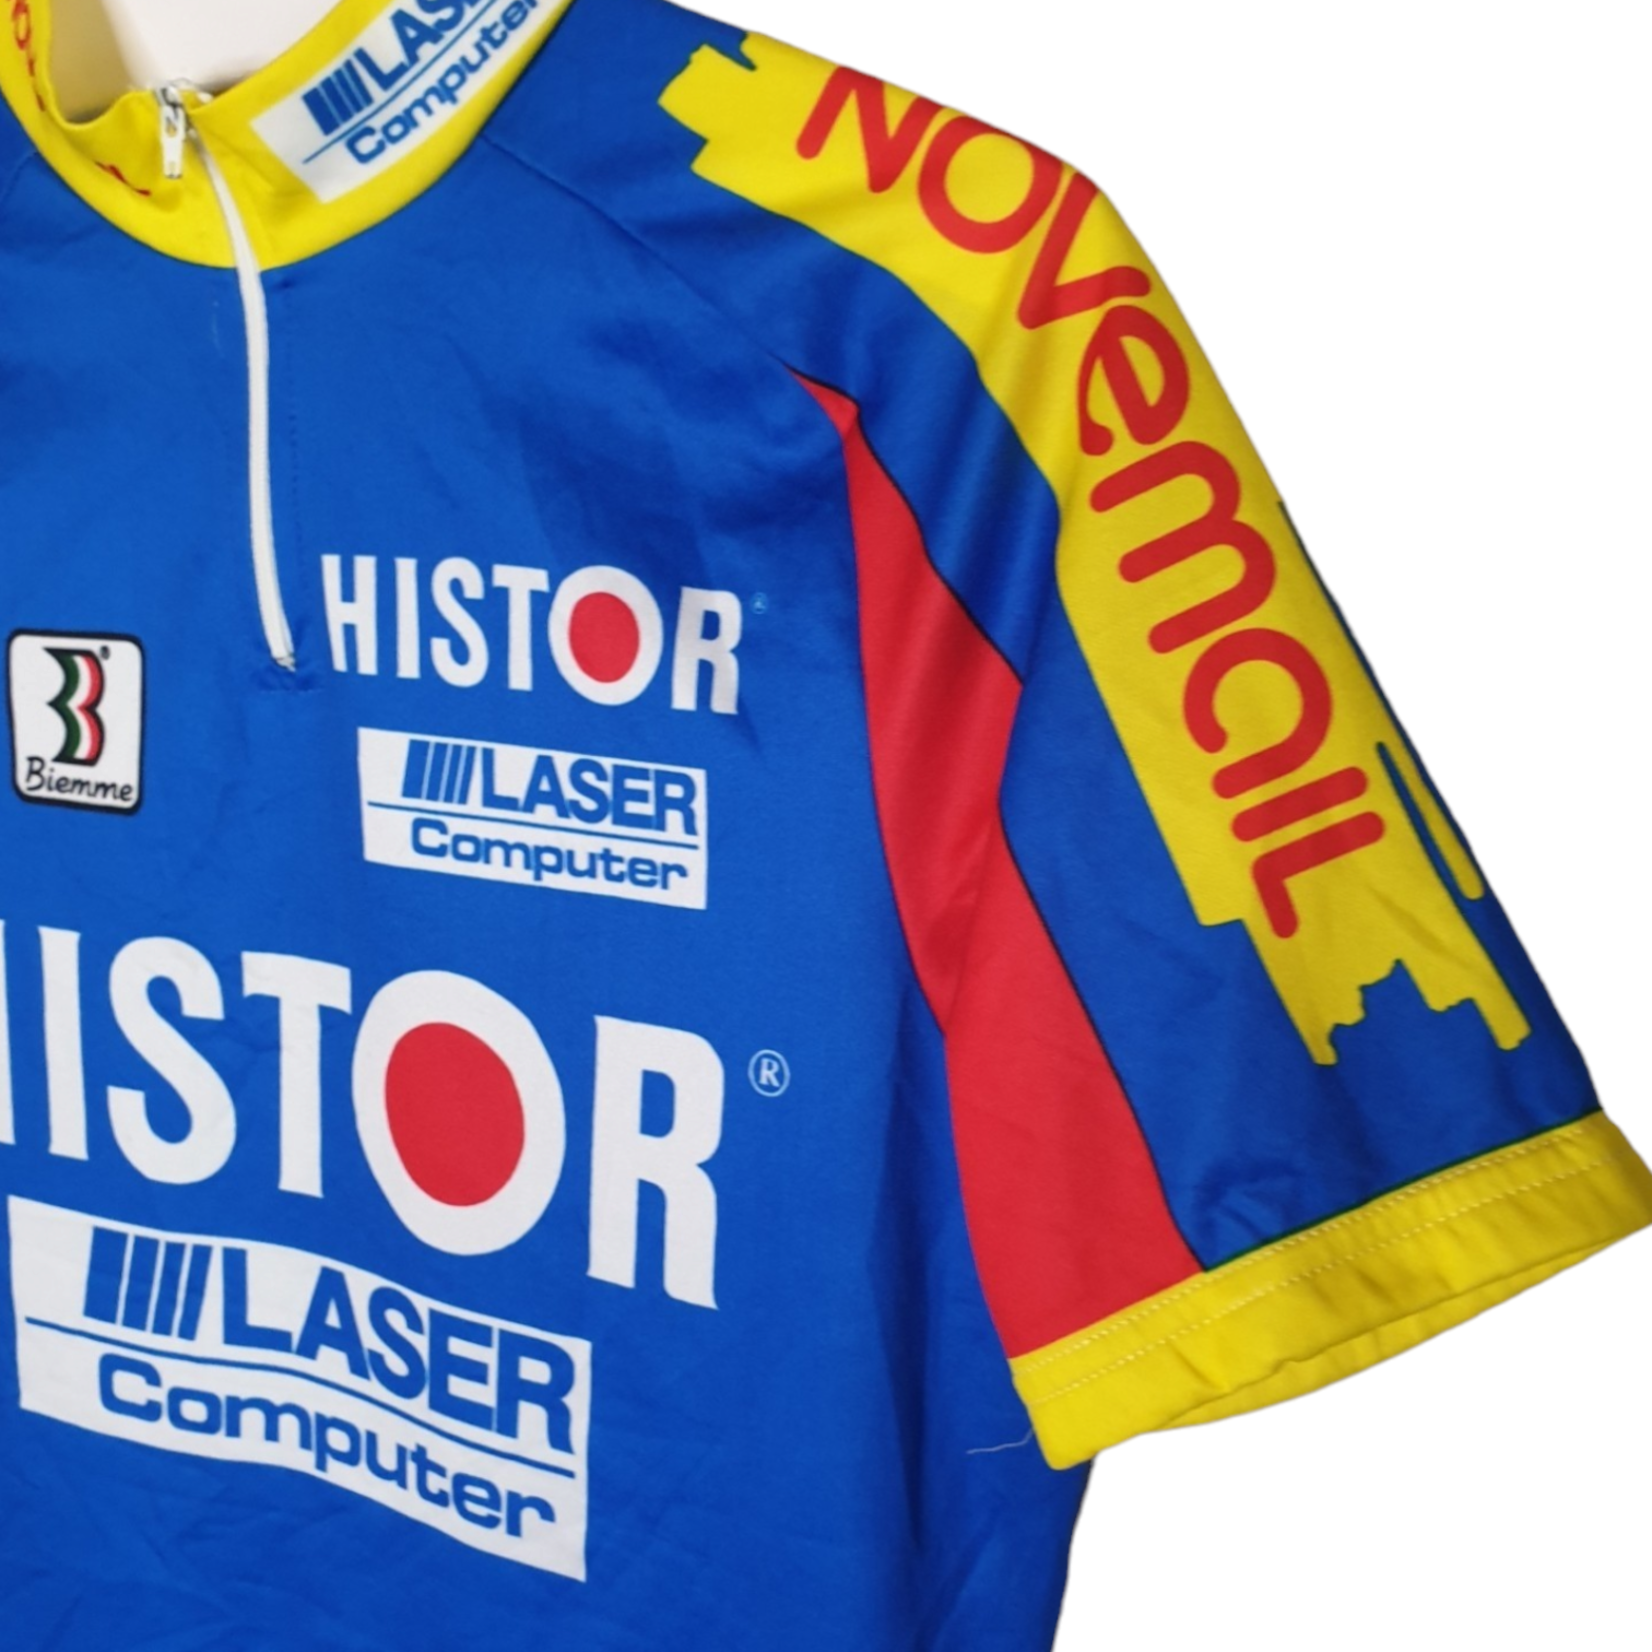 Biemme Sport Original Biemme Sport vintage cycling jersey Novemail–Histor–Laser Computer 1993